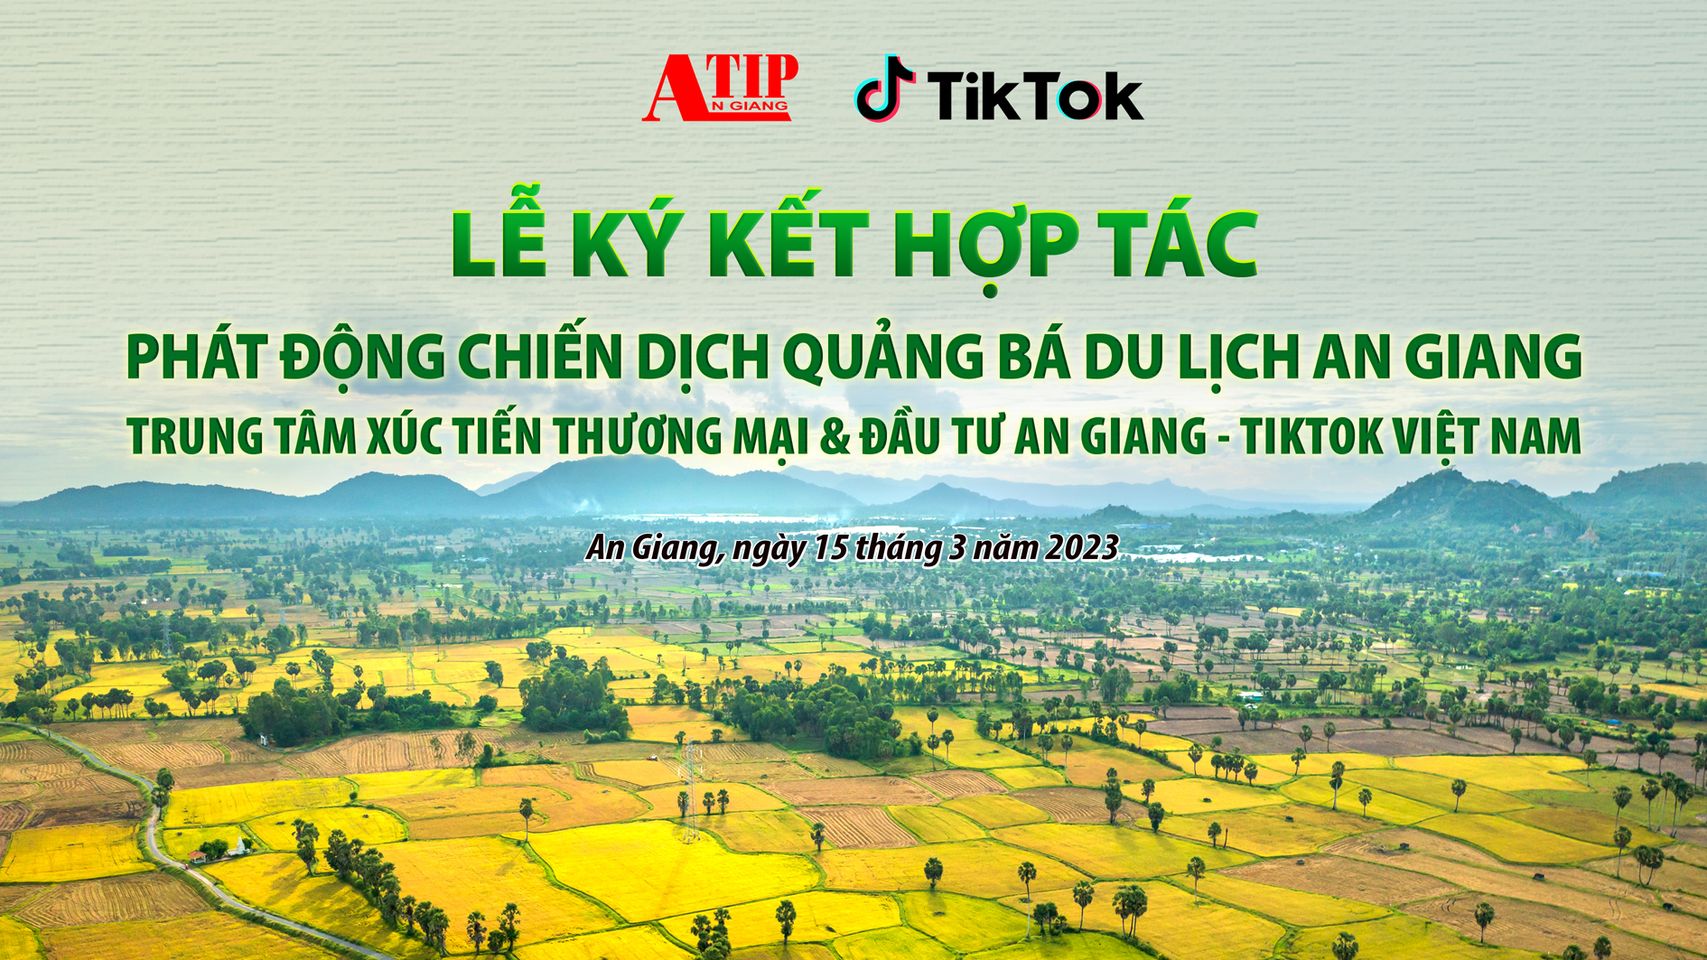 An Giang prepares to promote tourism through TikTok platform